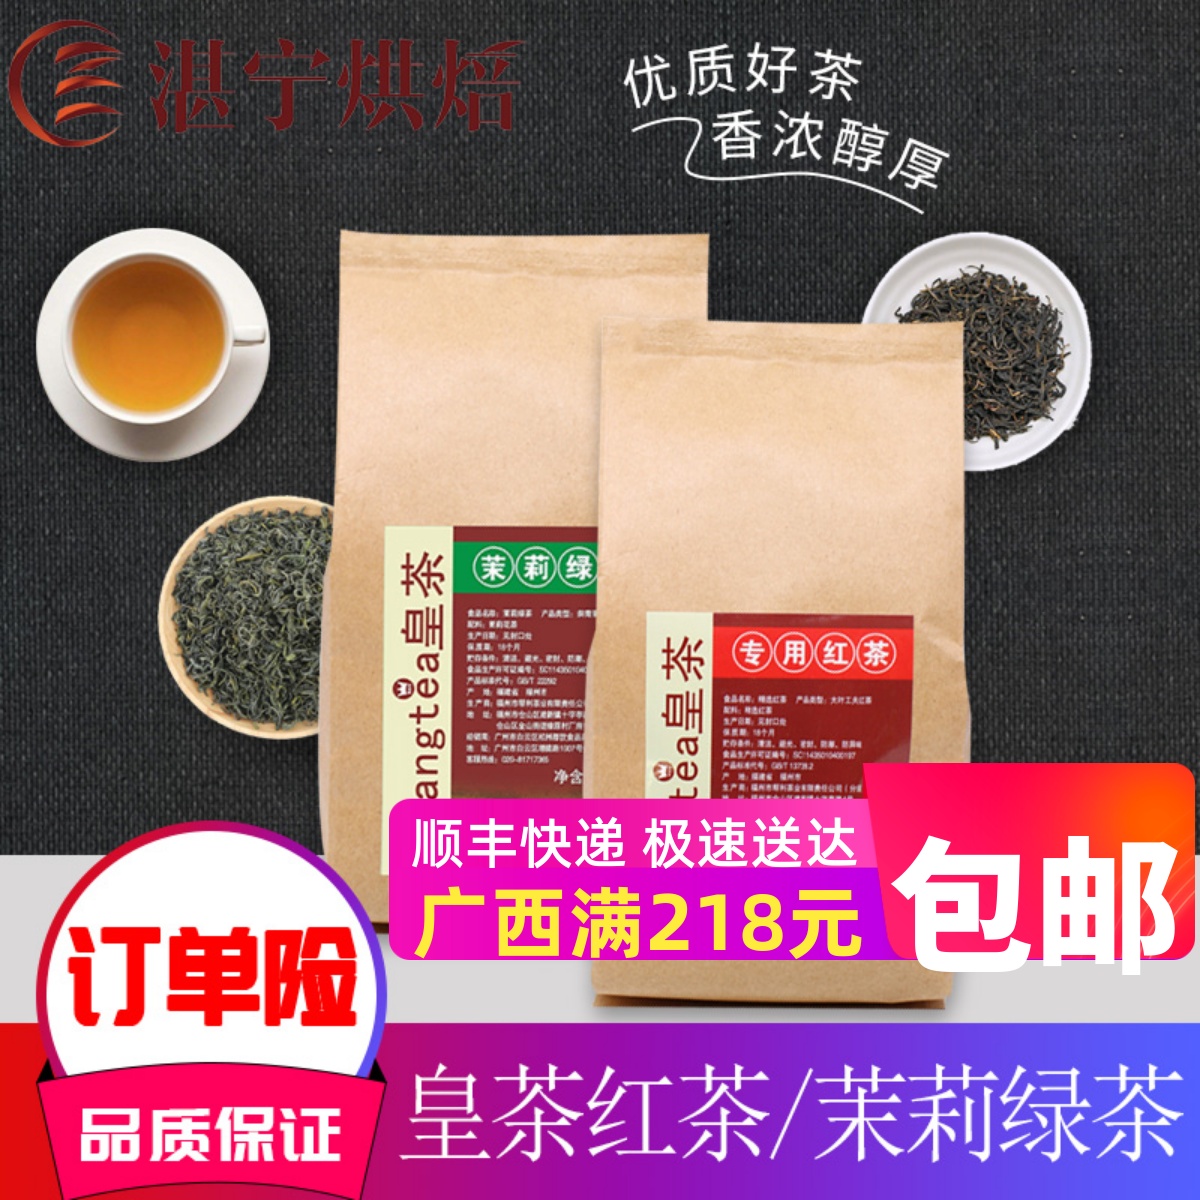 湛宁皇茶专用红茶 茉香绿茶浓香型 奶茶原料500g/包 COCO奶茶店